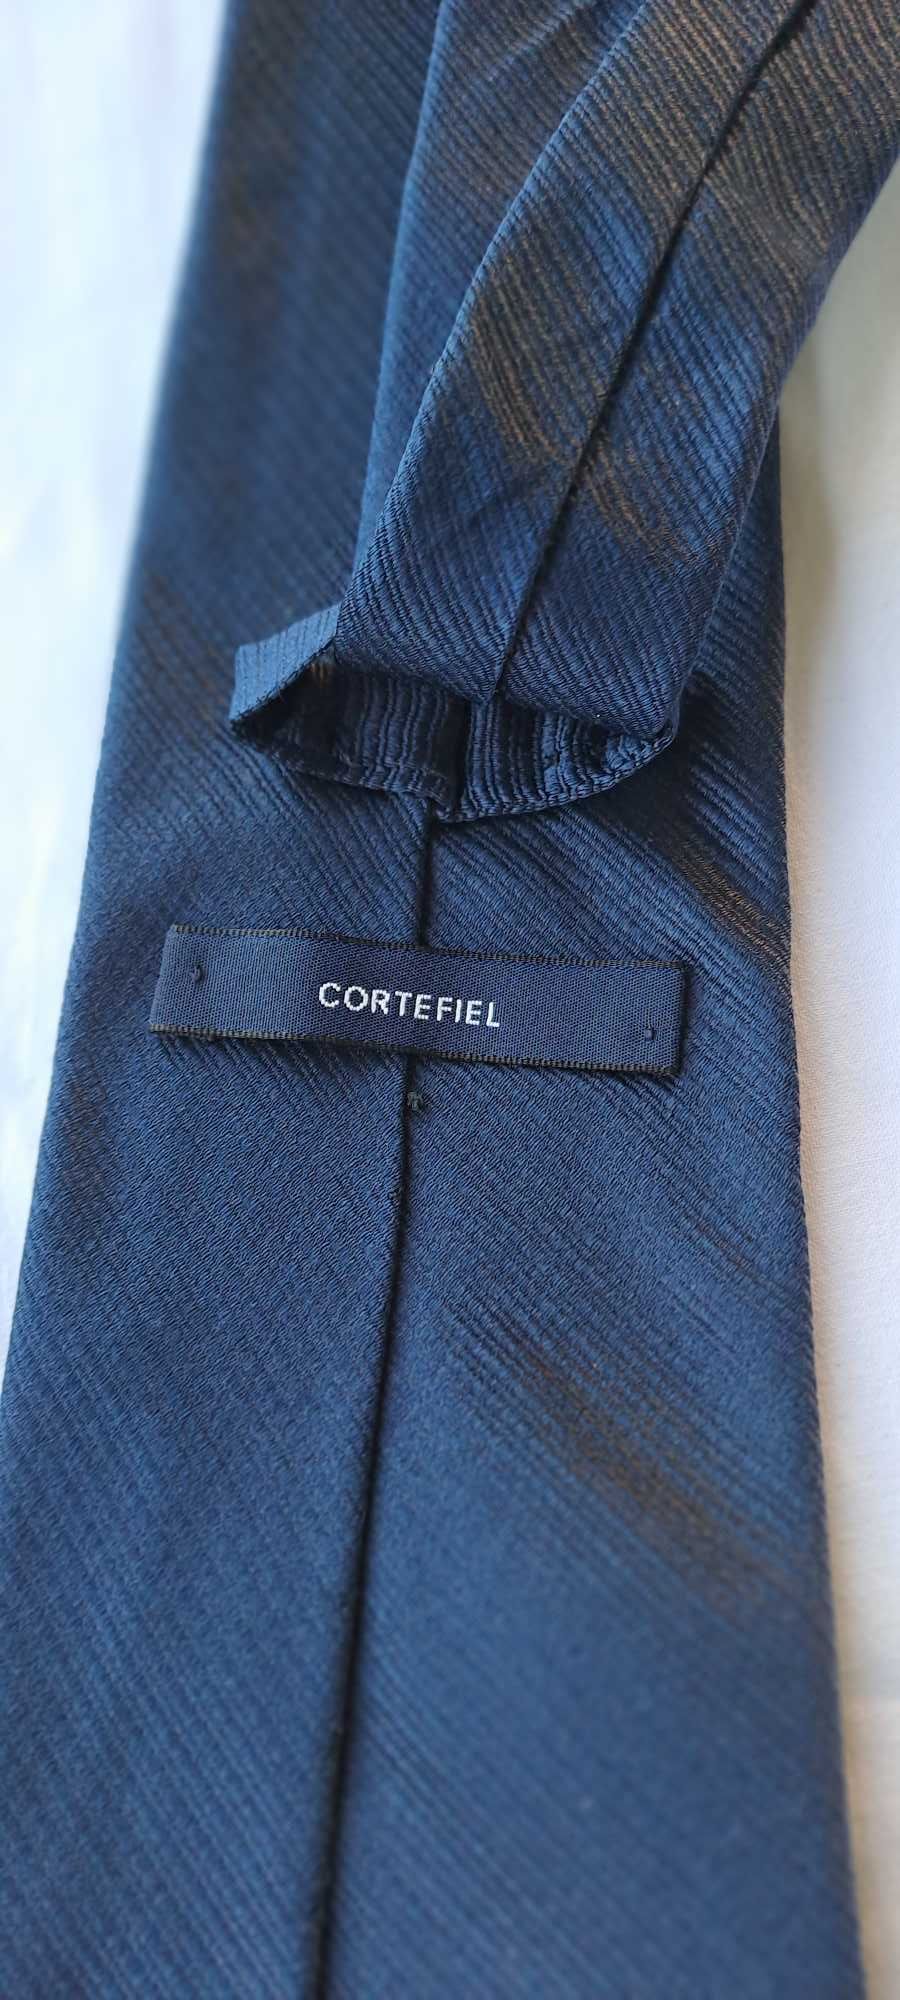 Gravata Cortefiel - Impecável